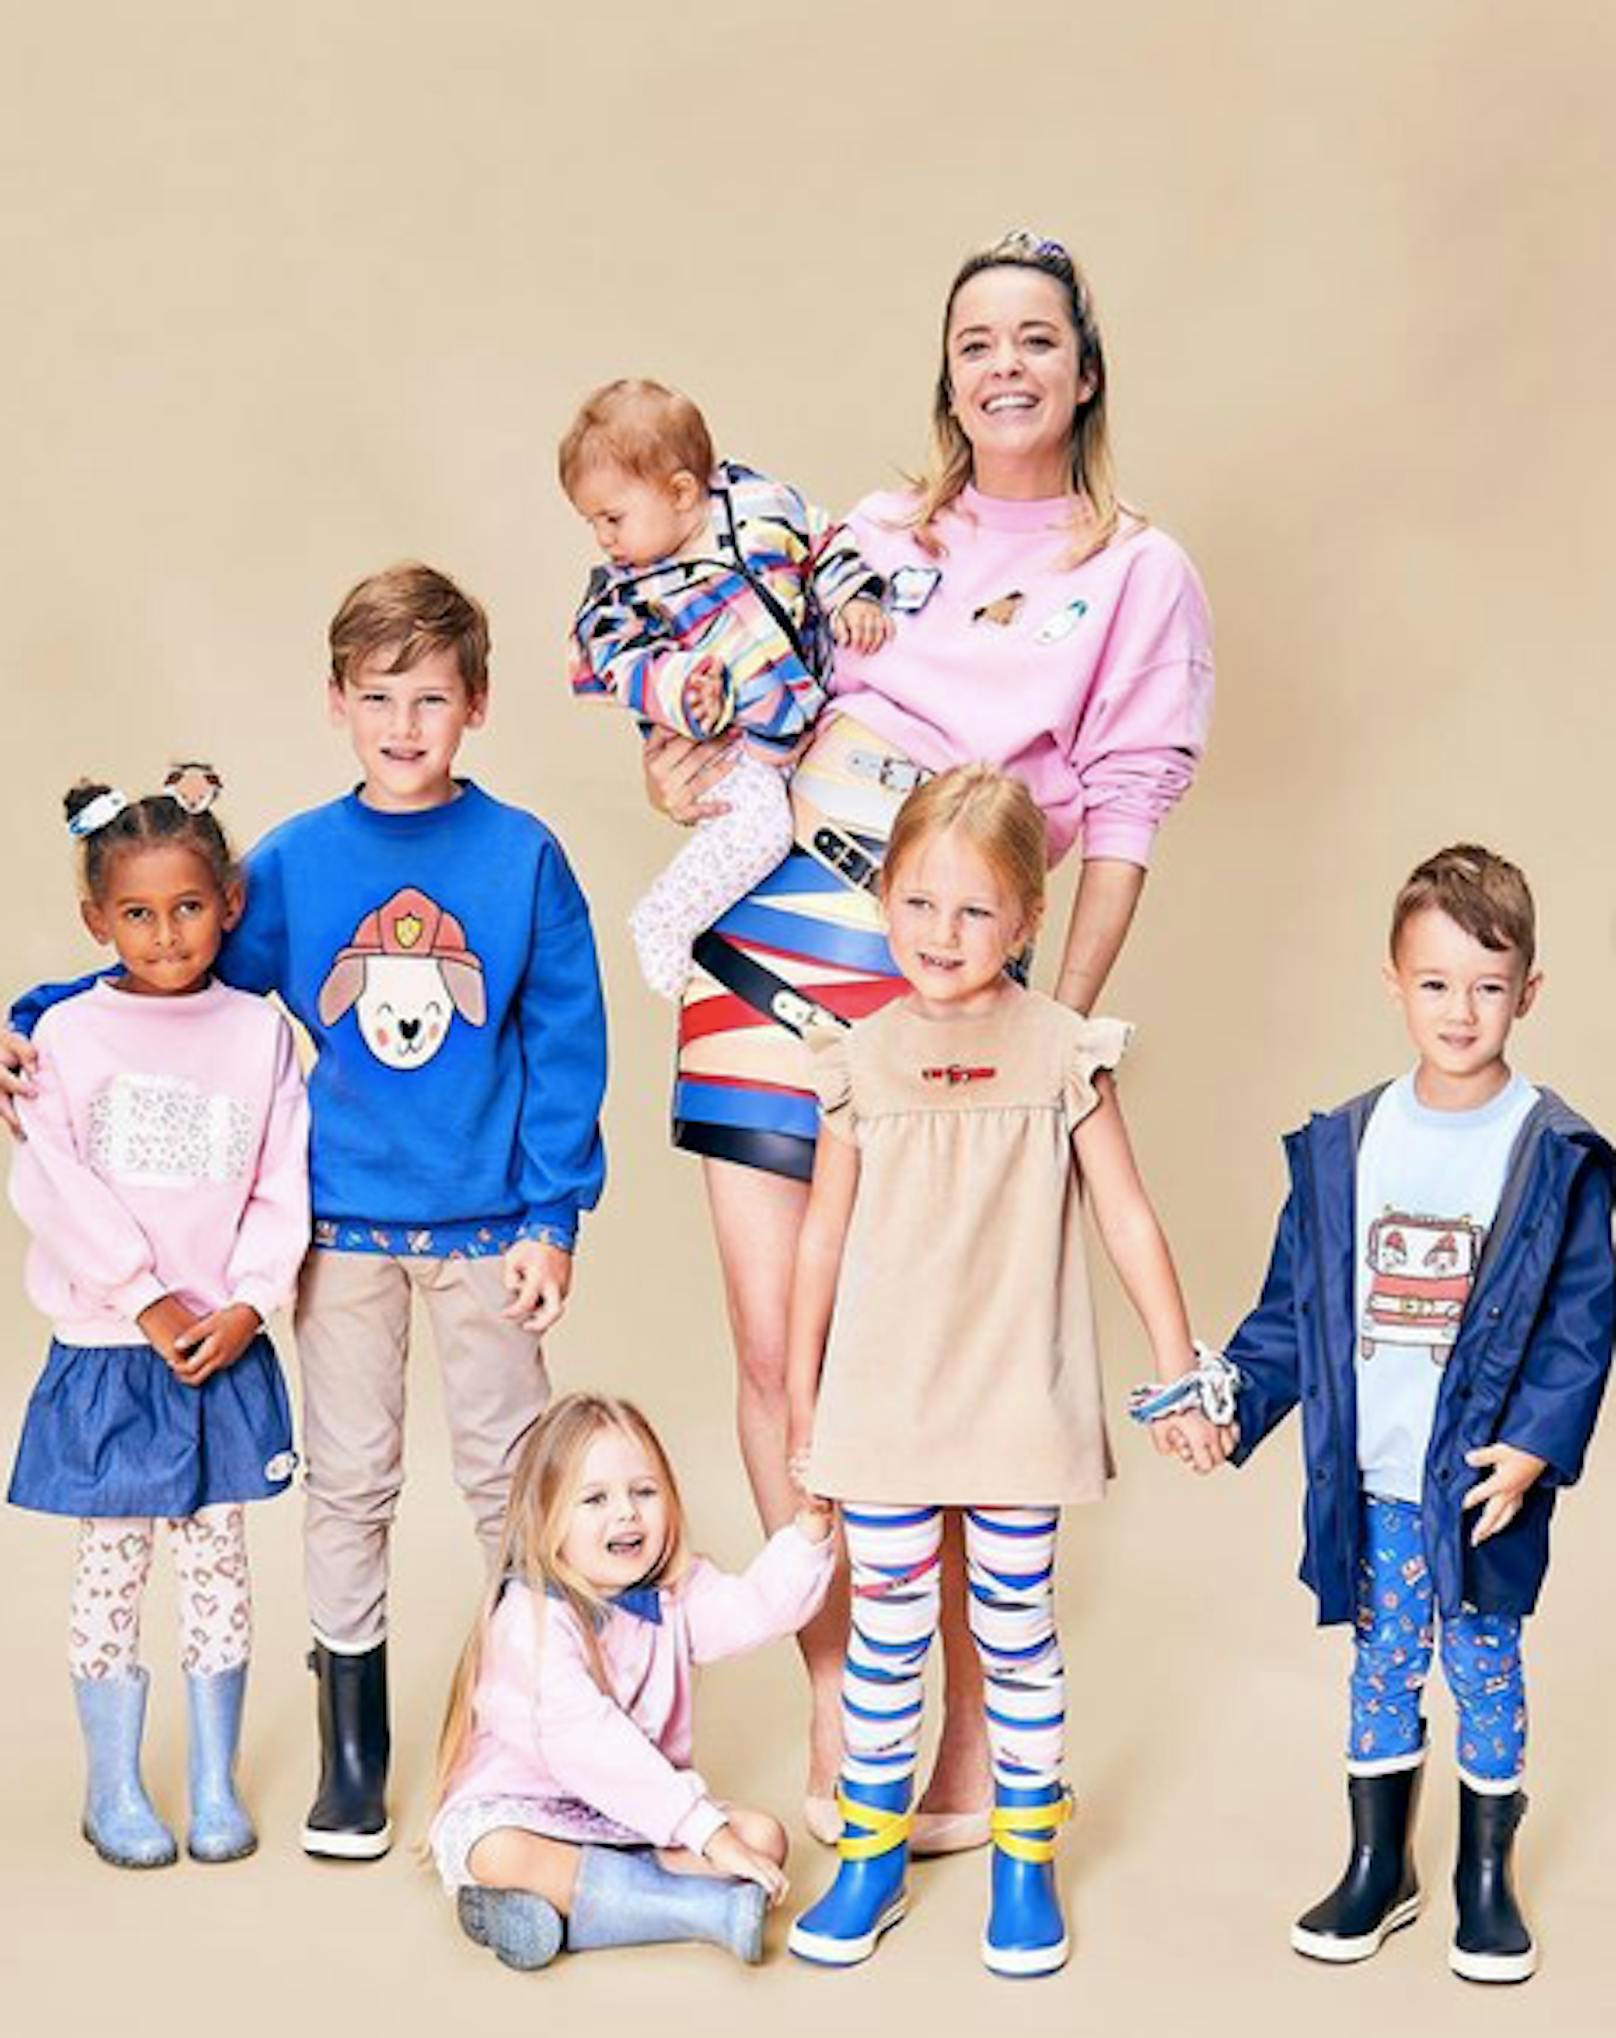 Austro-Designerin Marina Hoermanseder präsentierte 2021 erstmals Mode für die Kleinen. Kein Wunder, schließlich ist sie jetzt Mama und "voll im Thema"!&nbsp;